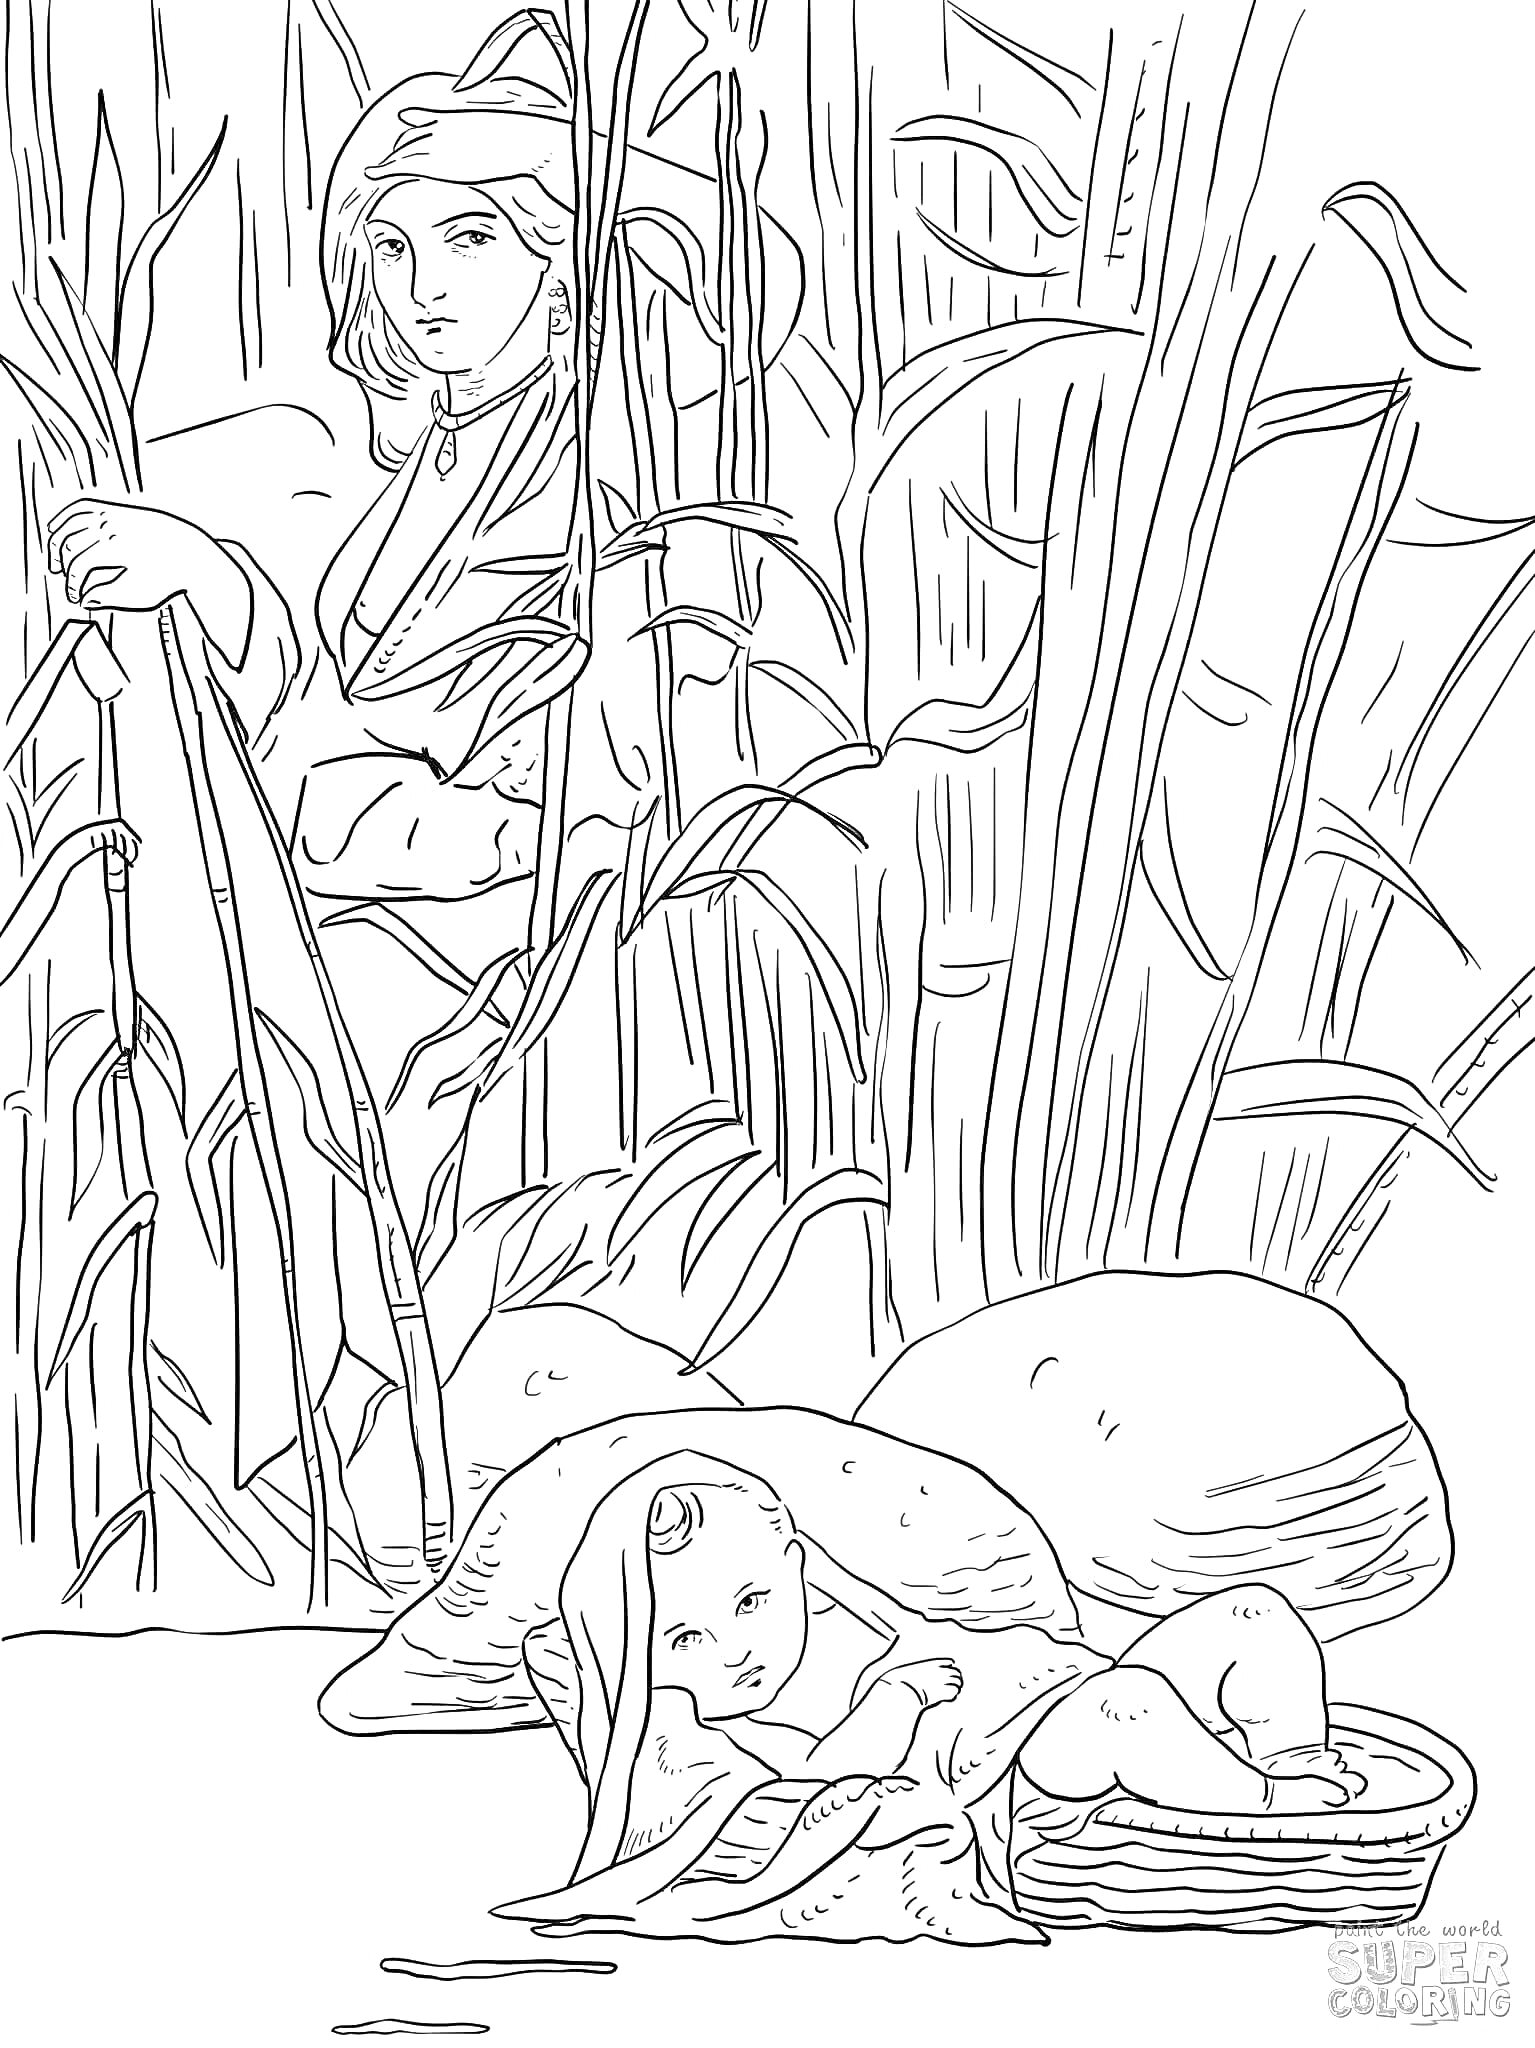 Раскраска Младенец Моисей в корзине на реке с женщиной на фоне среди тростника